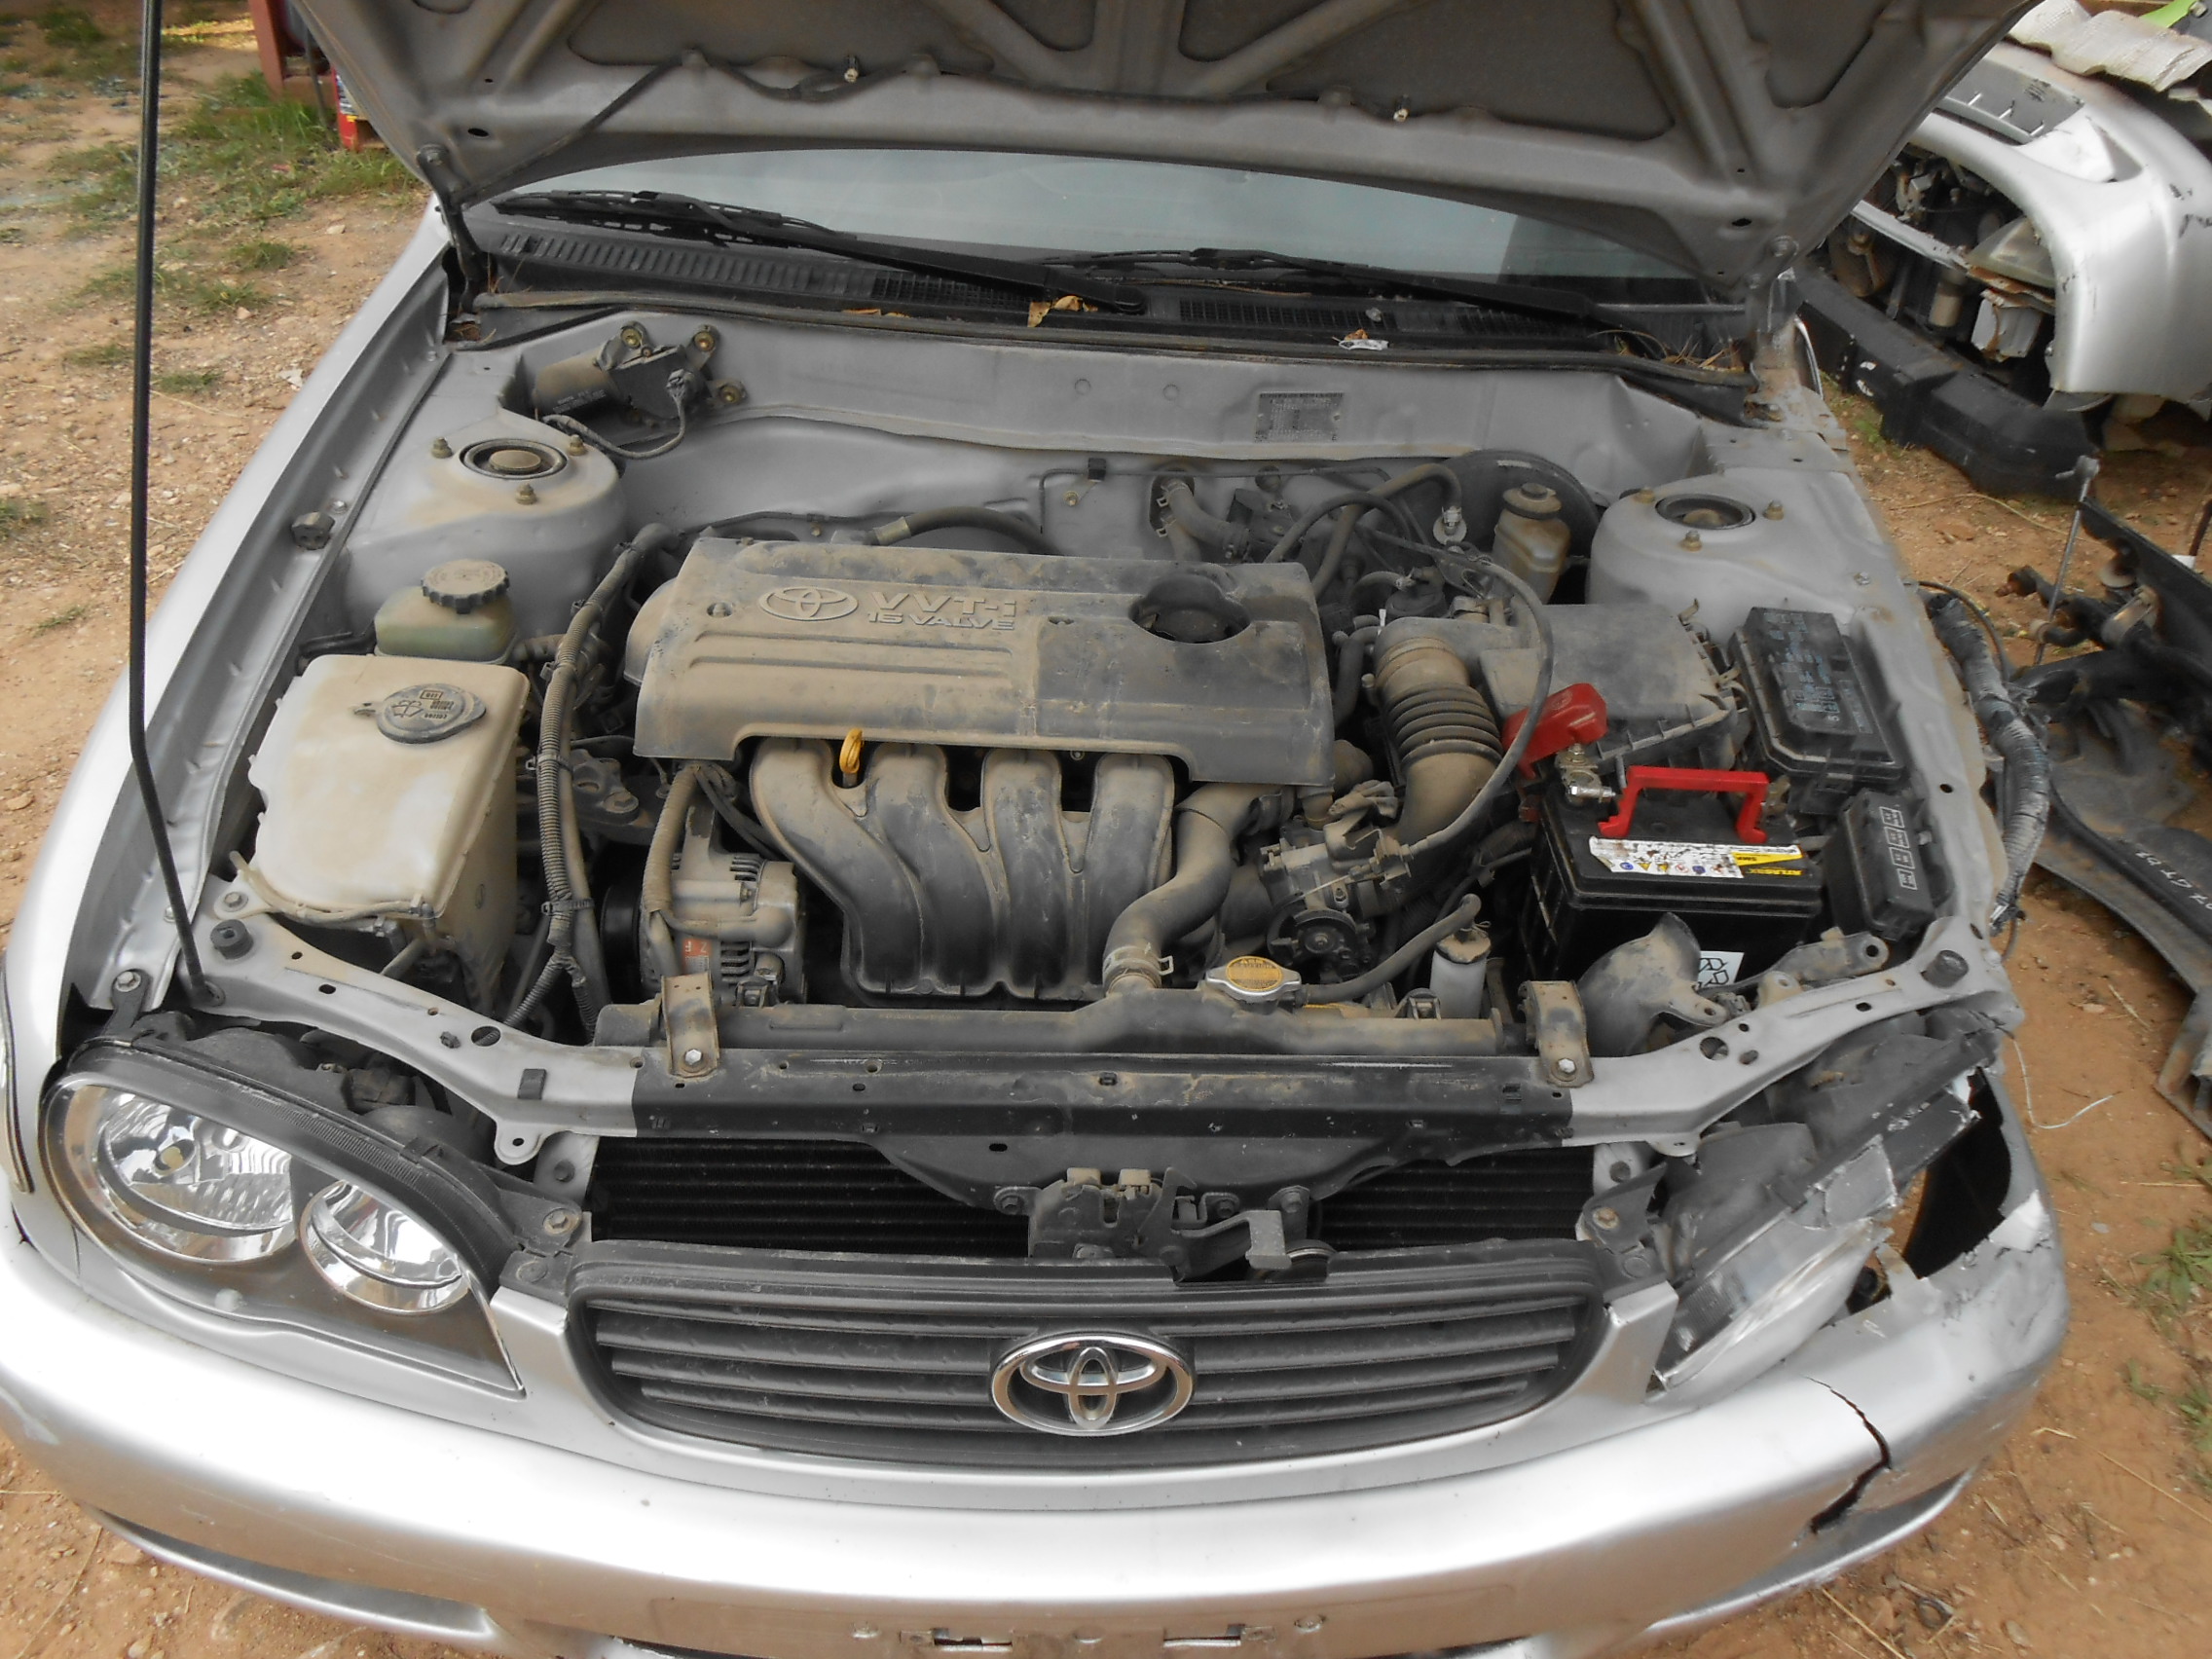 Ντίζες Ταχυτήτων Toyota Corolla VVT-i ’00 Σούπερ Προσφορά Μήνα